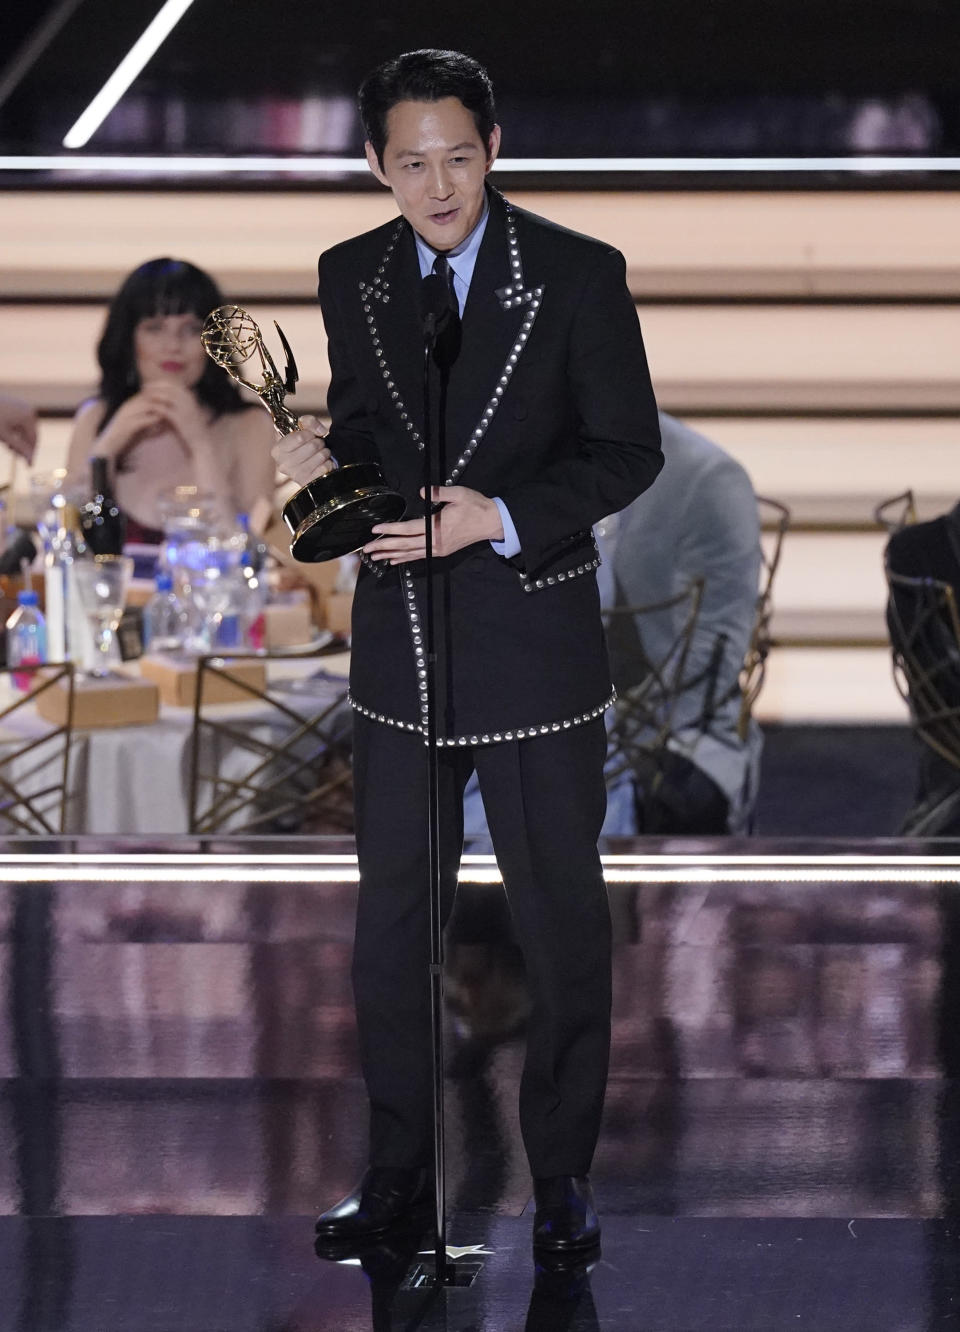 El actor sudcoreano Lee Jung-jae recibe el Emmy a mejor actor en una serie de drama por "Squid Game" en la 74a entrega de los Premios Emmy el lunes 12 de septiembre de 2022 en el Teatro Microsoft en Los Angeles. (Foto AP/Mark Terrill)